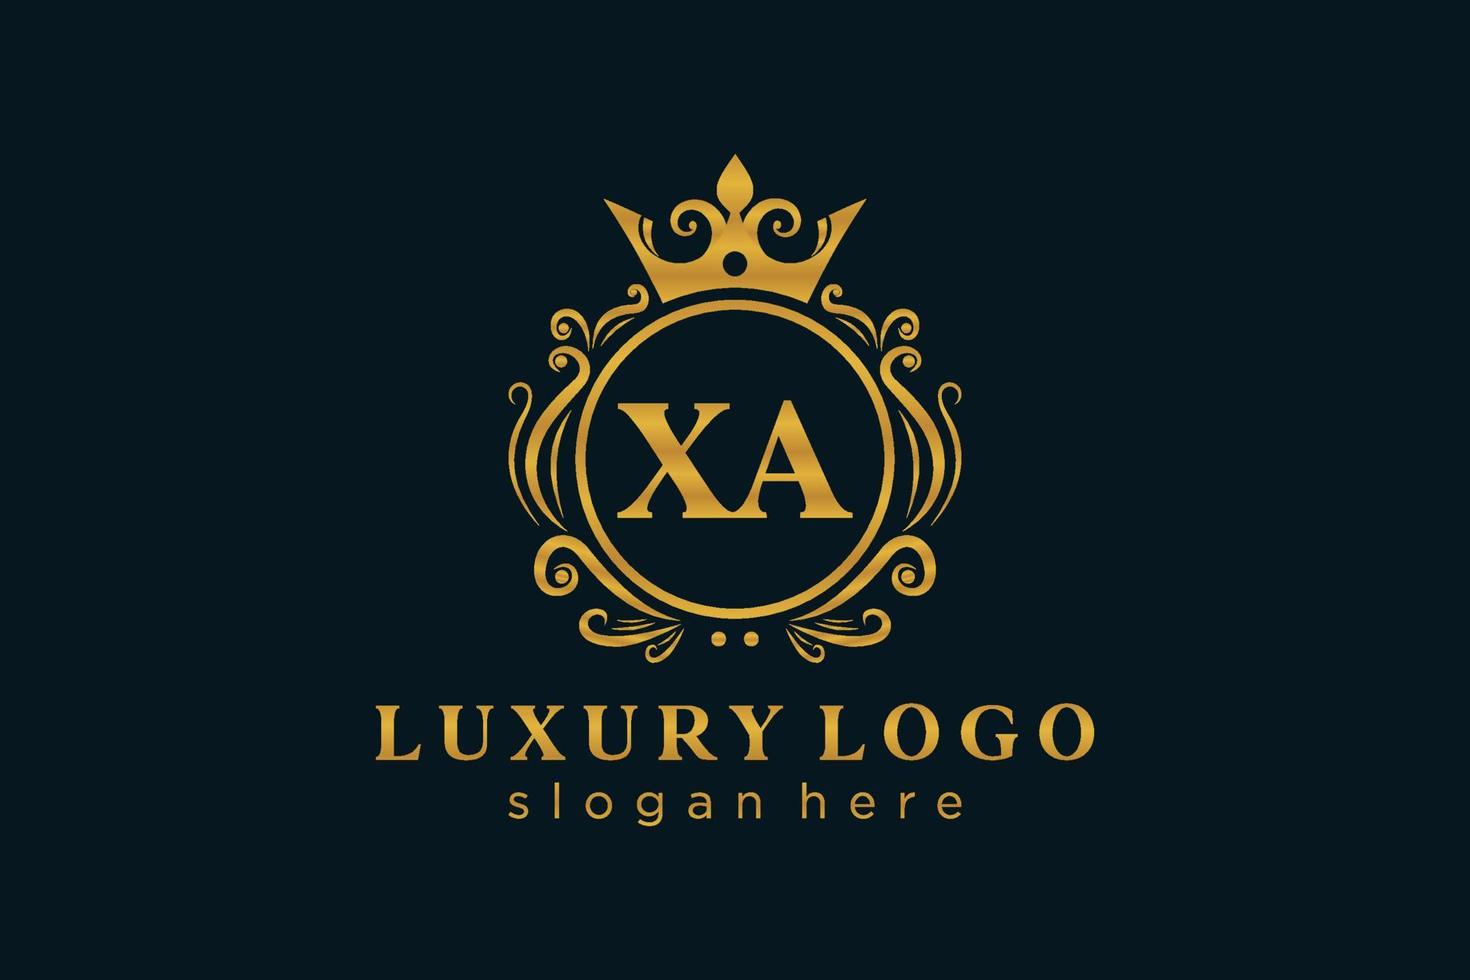 Anfangsbuchstabe xa Royal Luxury Logo Vorlage in Vektorgrafiken für Restaurant, Lizenzgebühren, Boutique, Café, Hotel, heraldisch, Schmuck, Mode und andere Vektorillustrationen. vektor